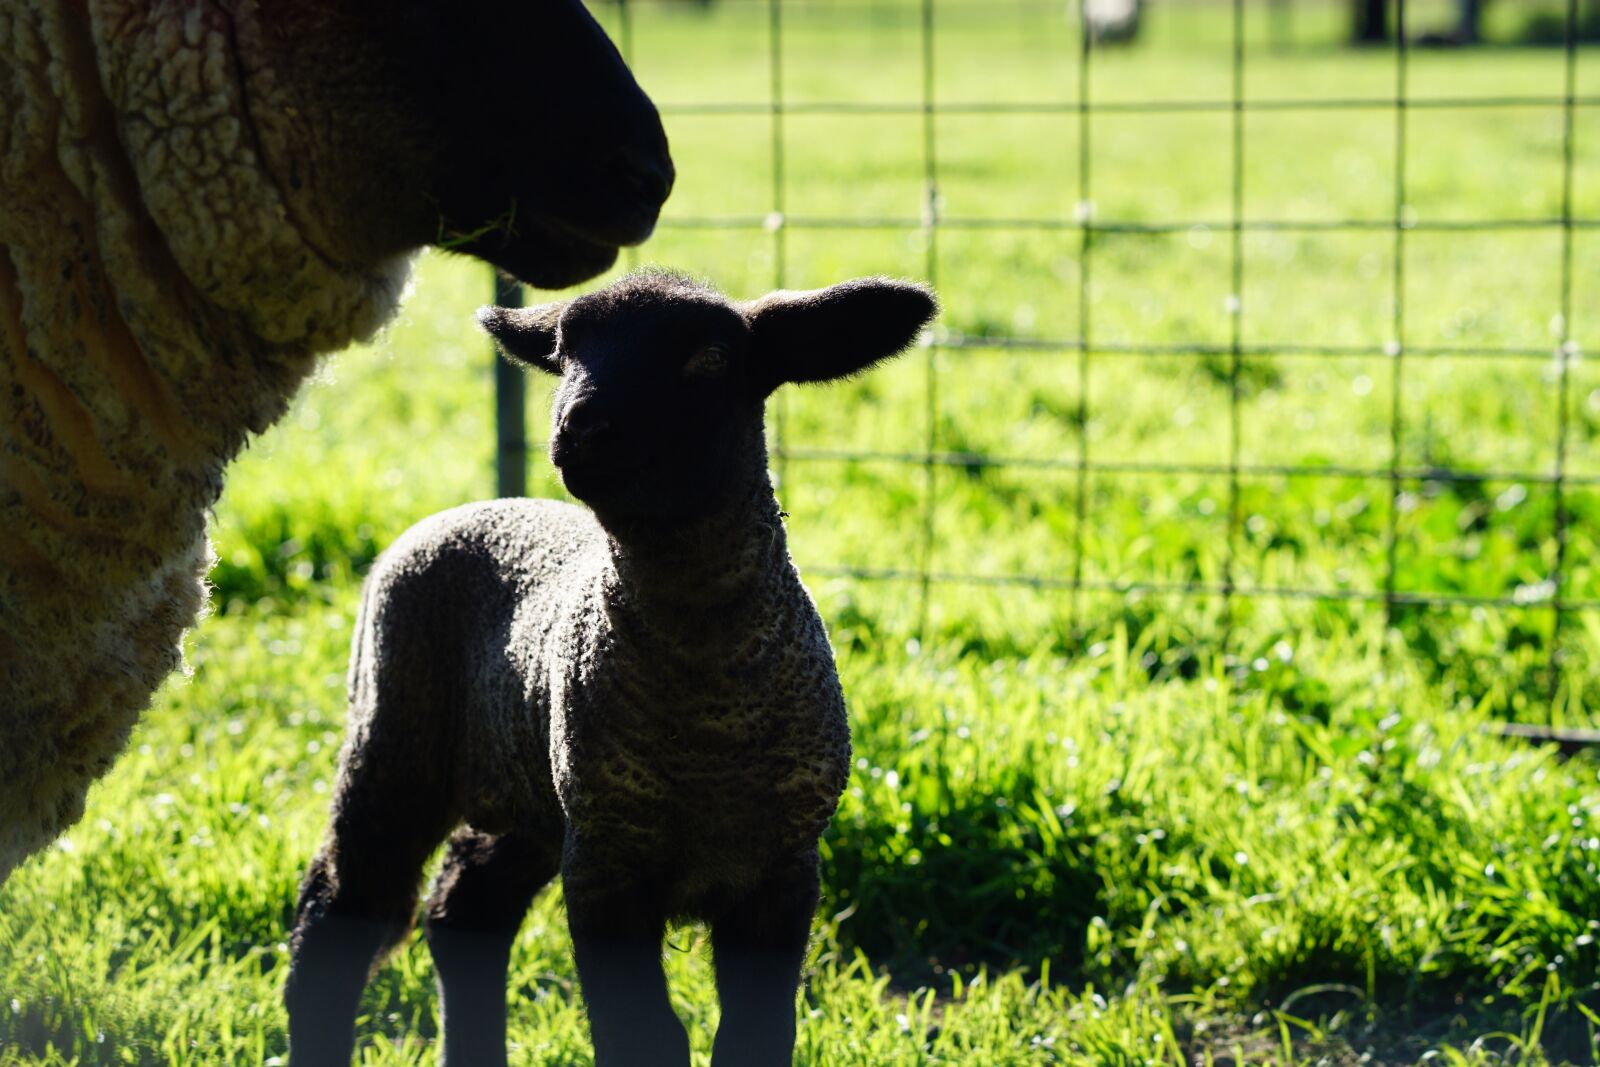 Sony FE 85mm F1.8 sample photo. Farm, sheep, lamb photography